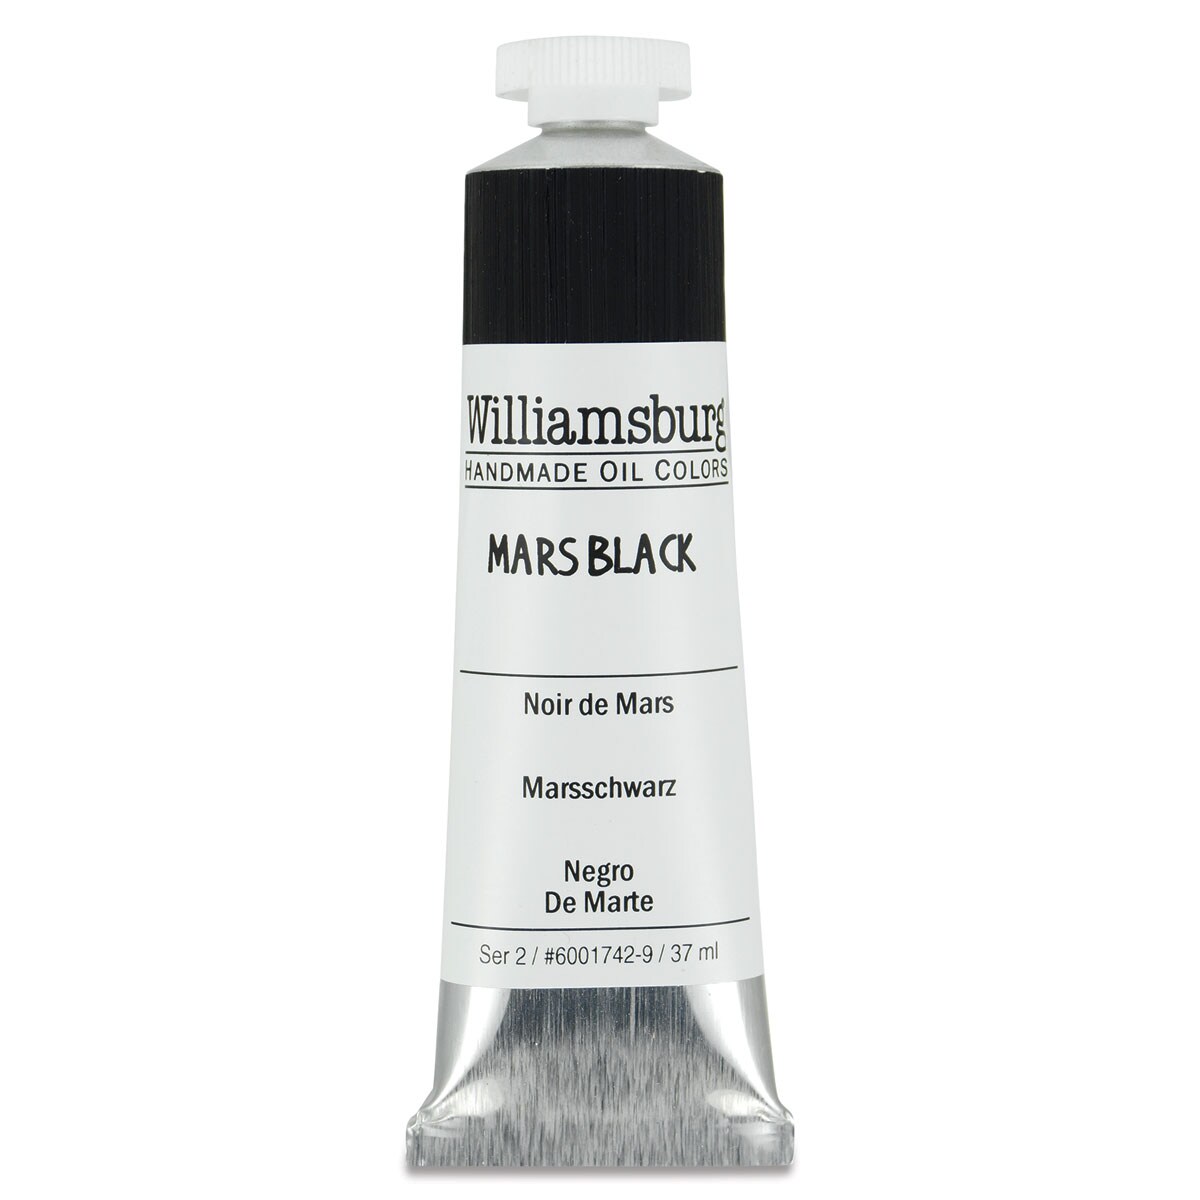 Williamsburg Handmade Oil Paints - Mars Black, 37 ml tube